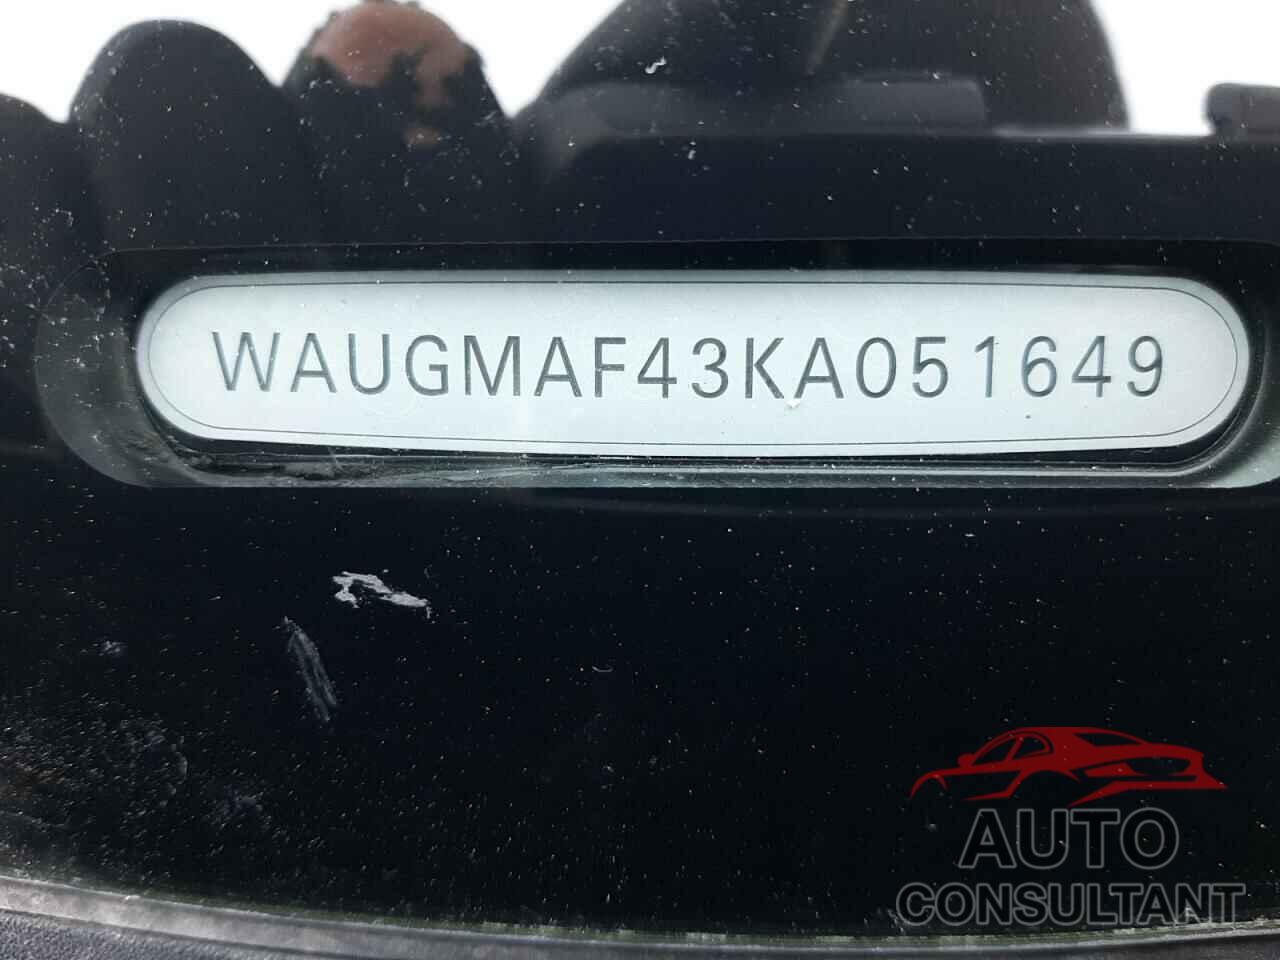 AUDI A4 2019 - WAUGMAF43KA051649